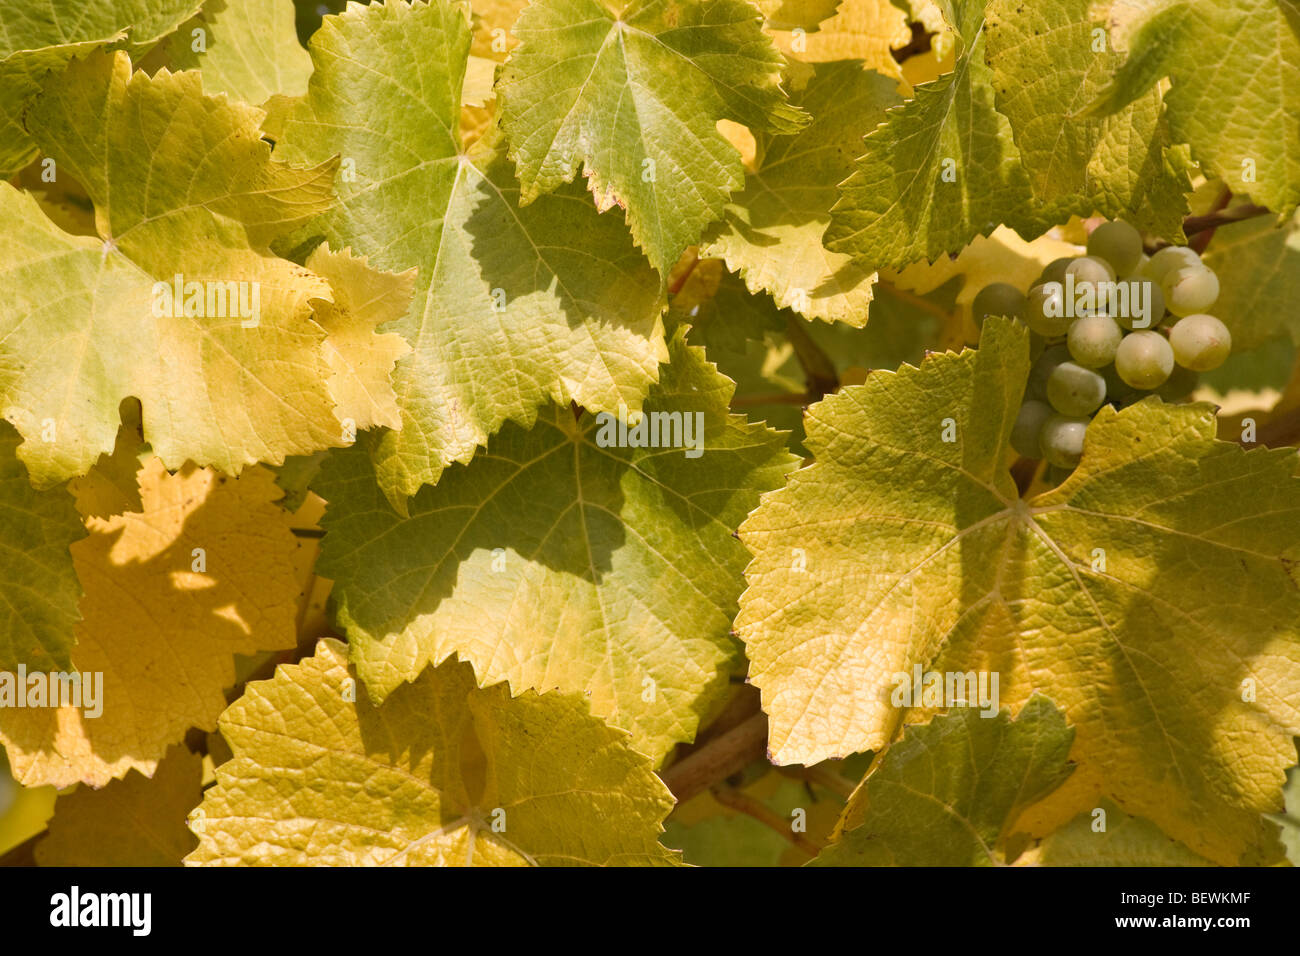 Close-up de raisins avec des feuilles sur une branche, Willamette Valley, Oregon, USA Banque D'Images